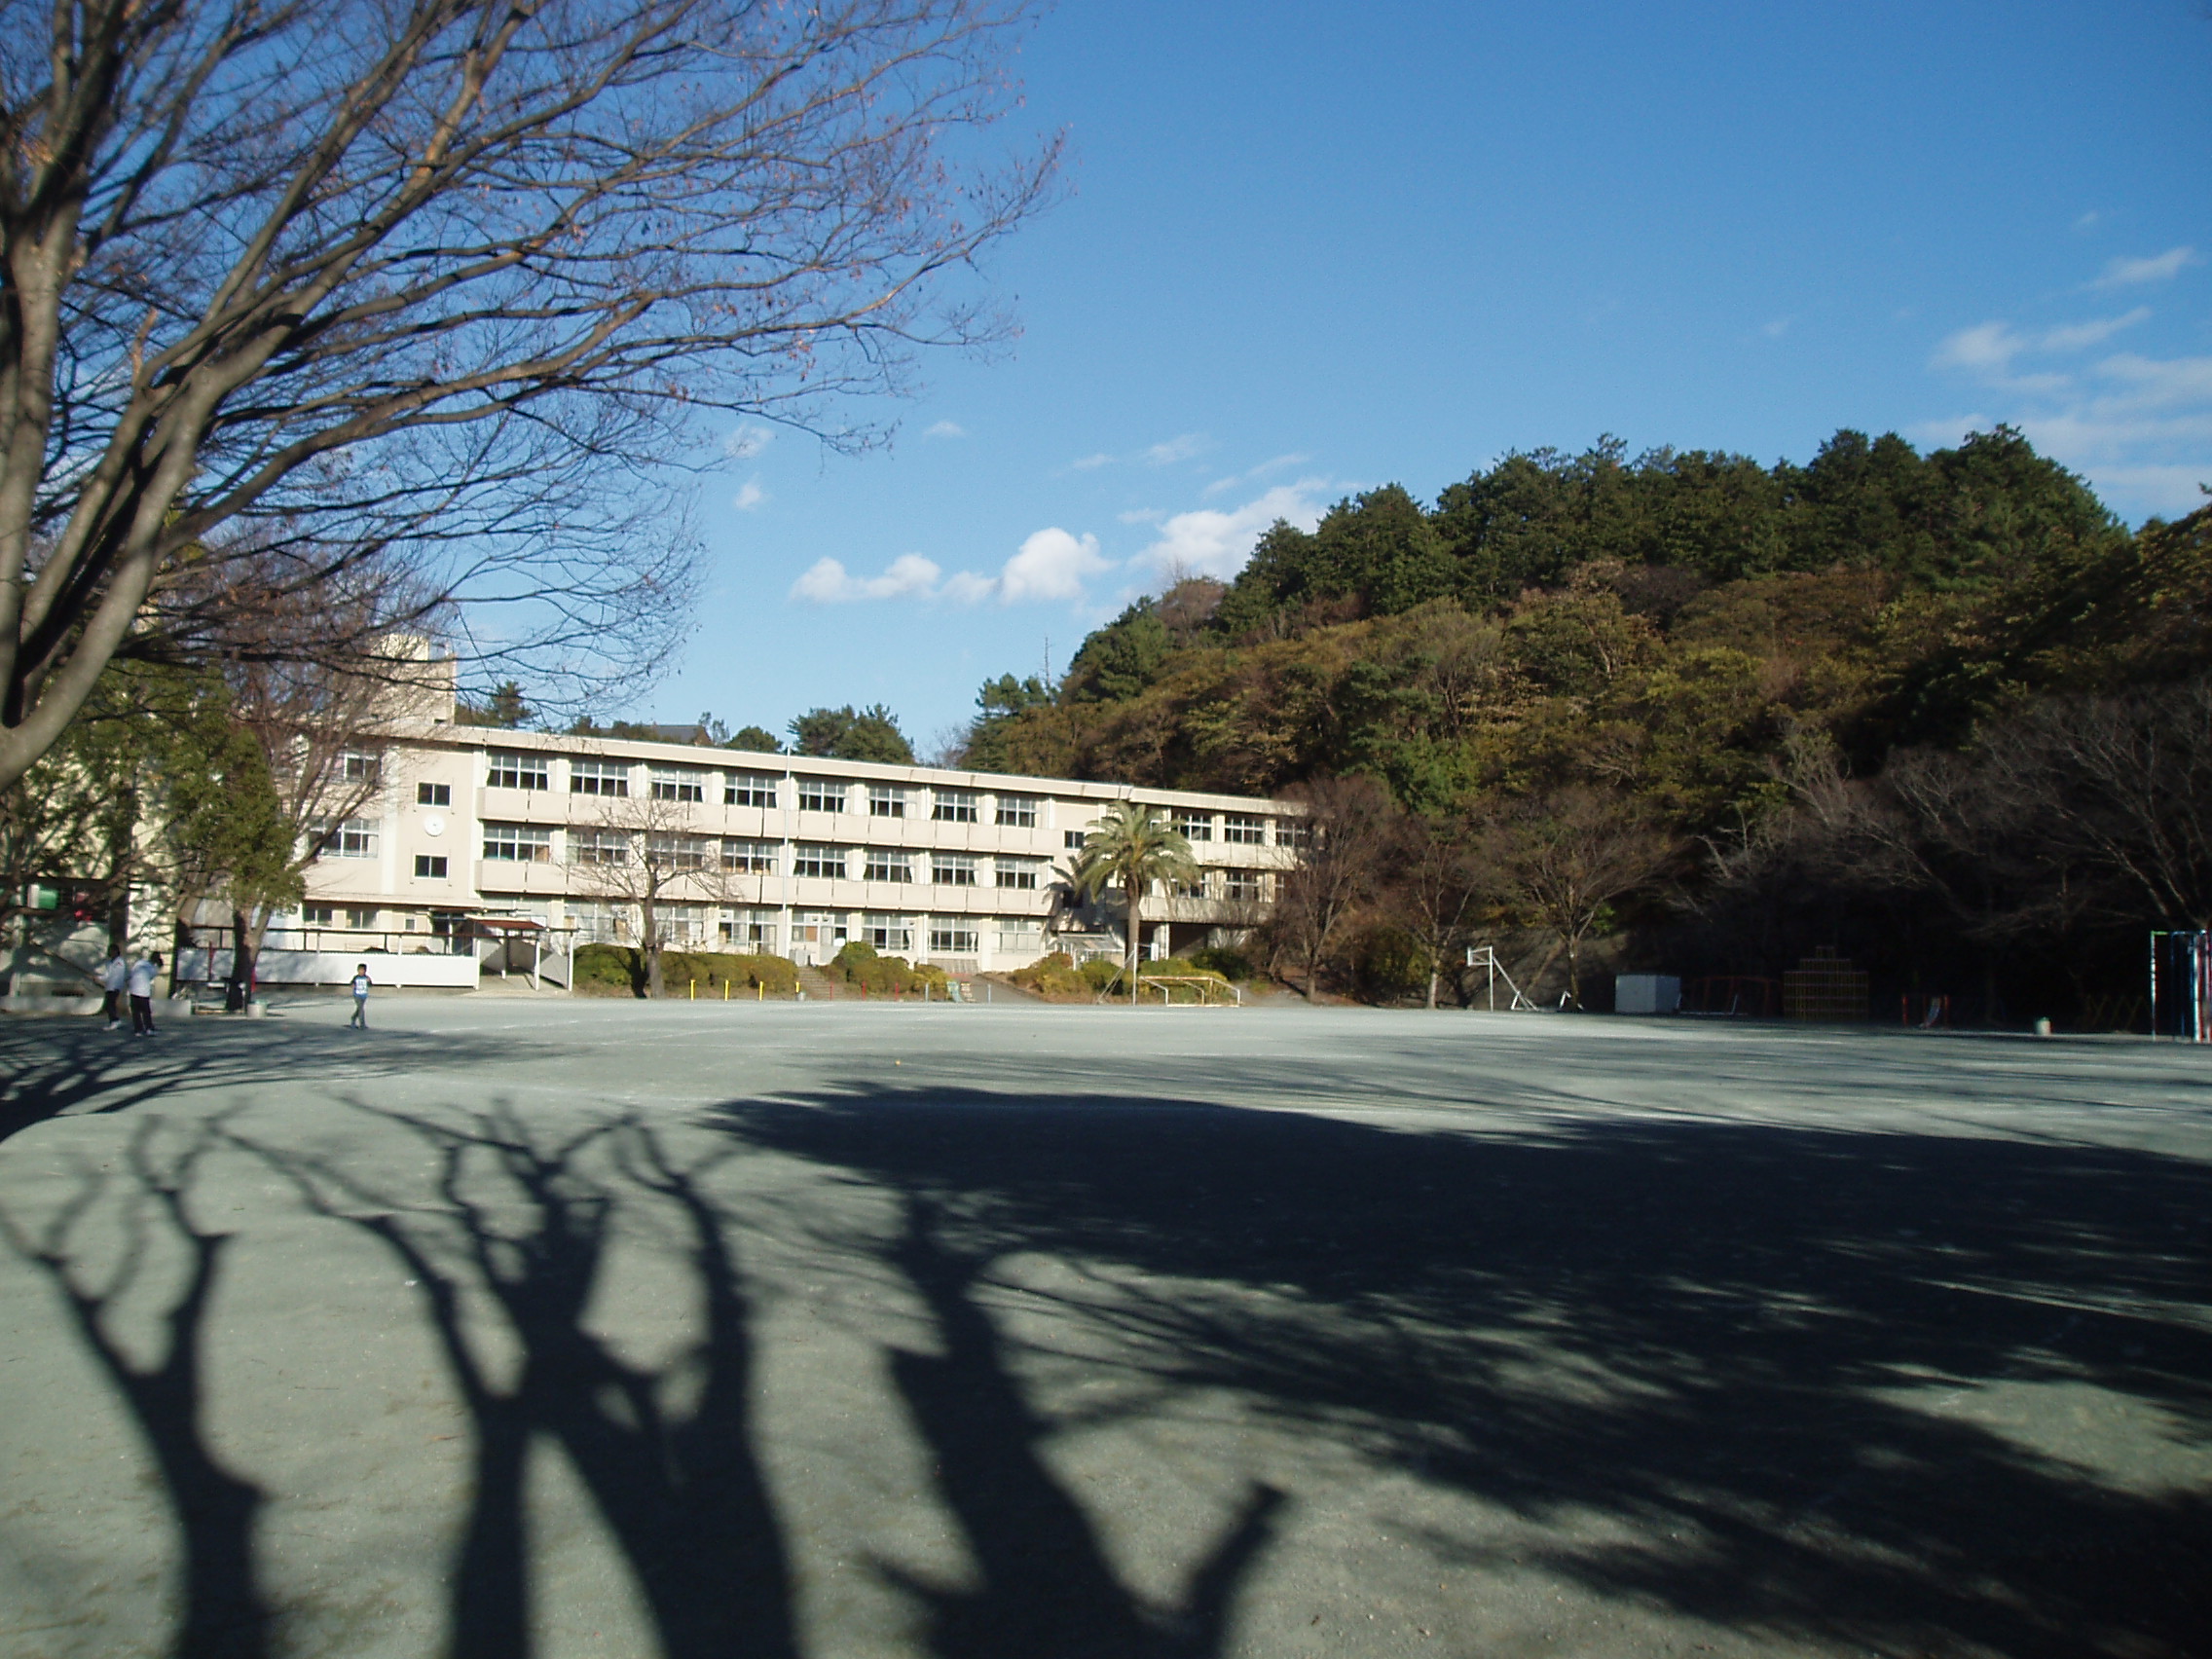 Primary school. 900m until Ito Municipal Minami Elementary School (Elementary School)